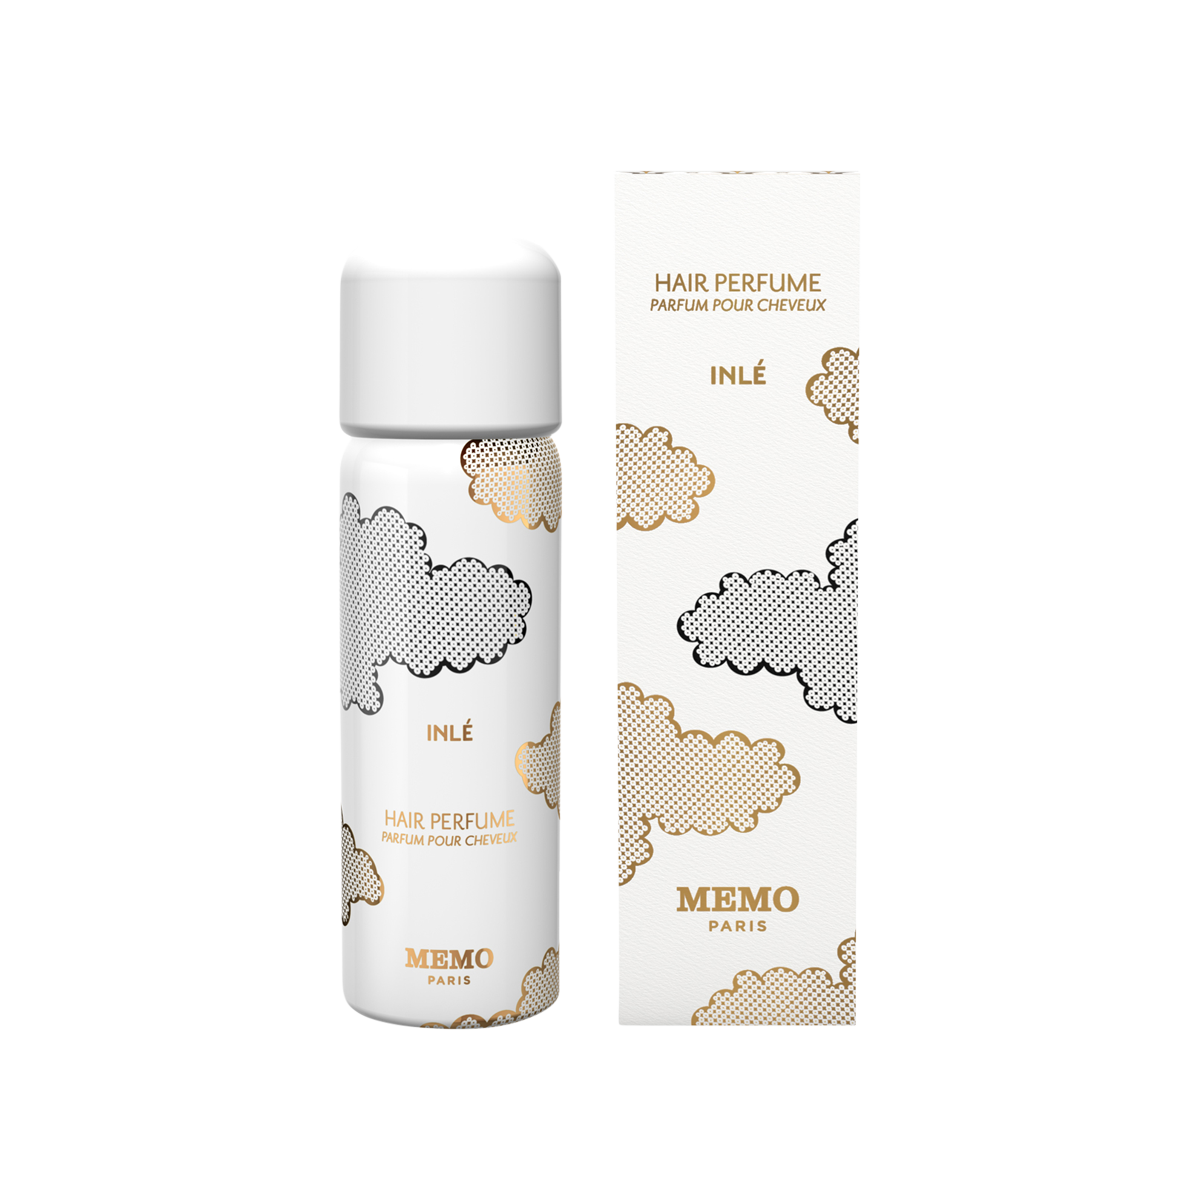 Memo Paris - Inle Hair Perfume